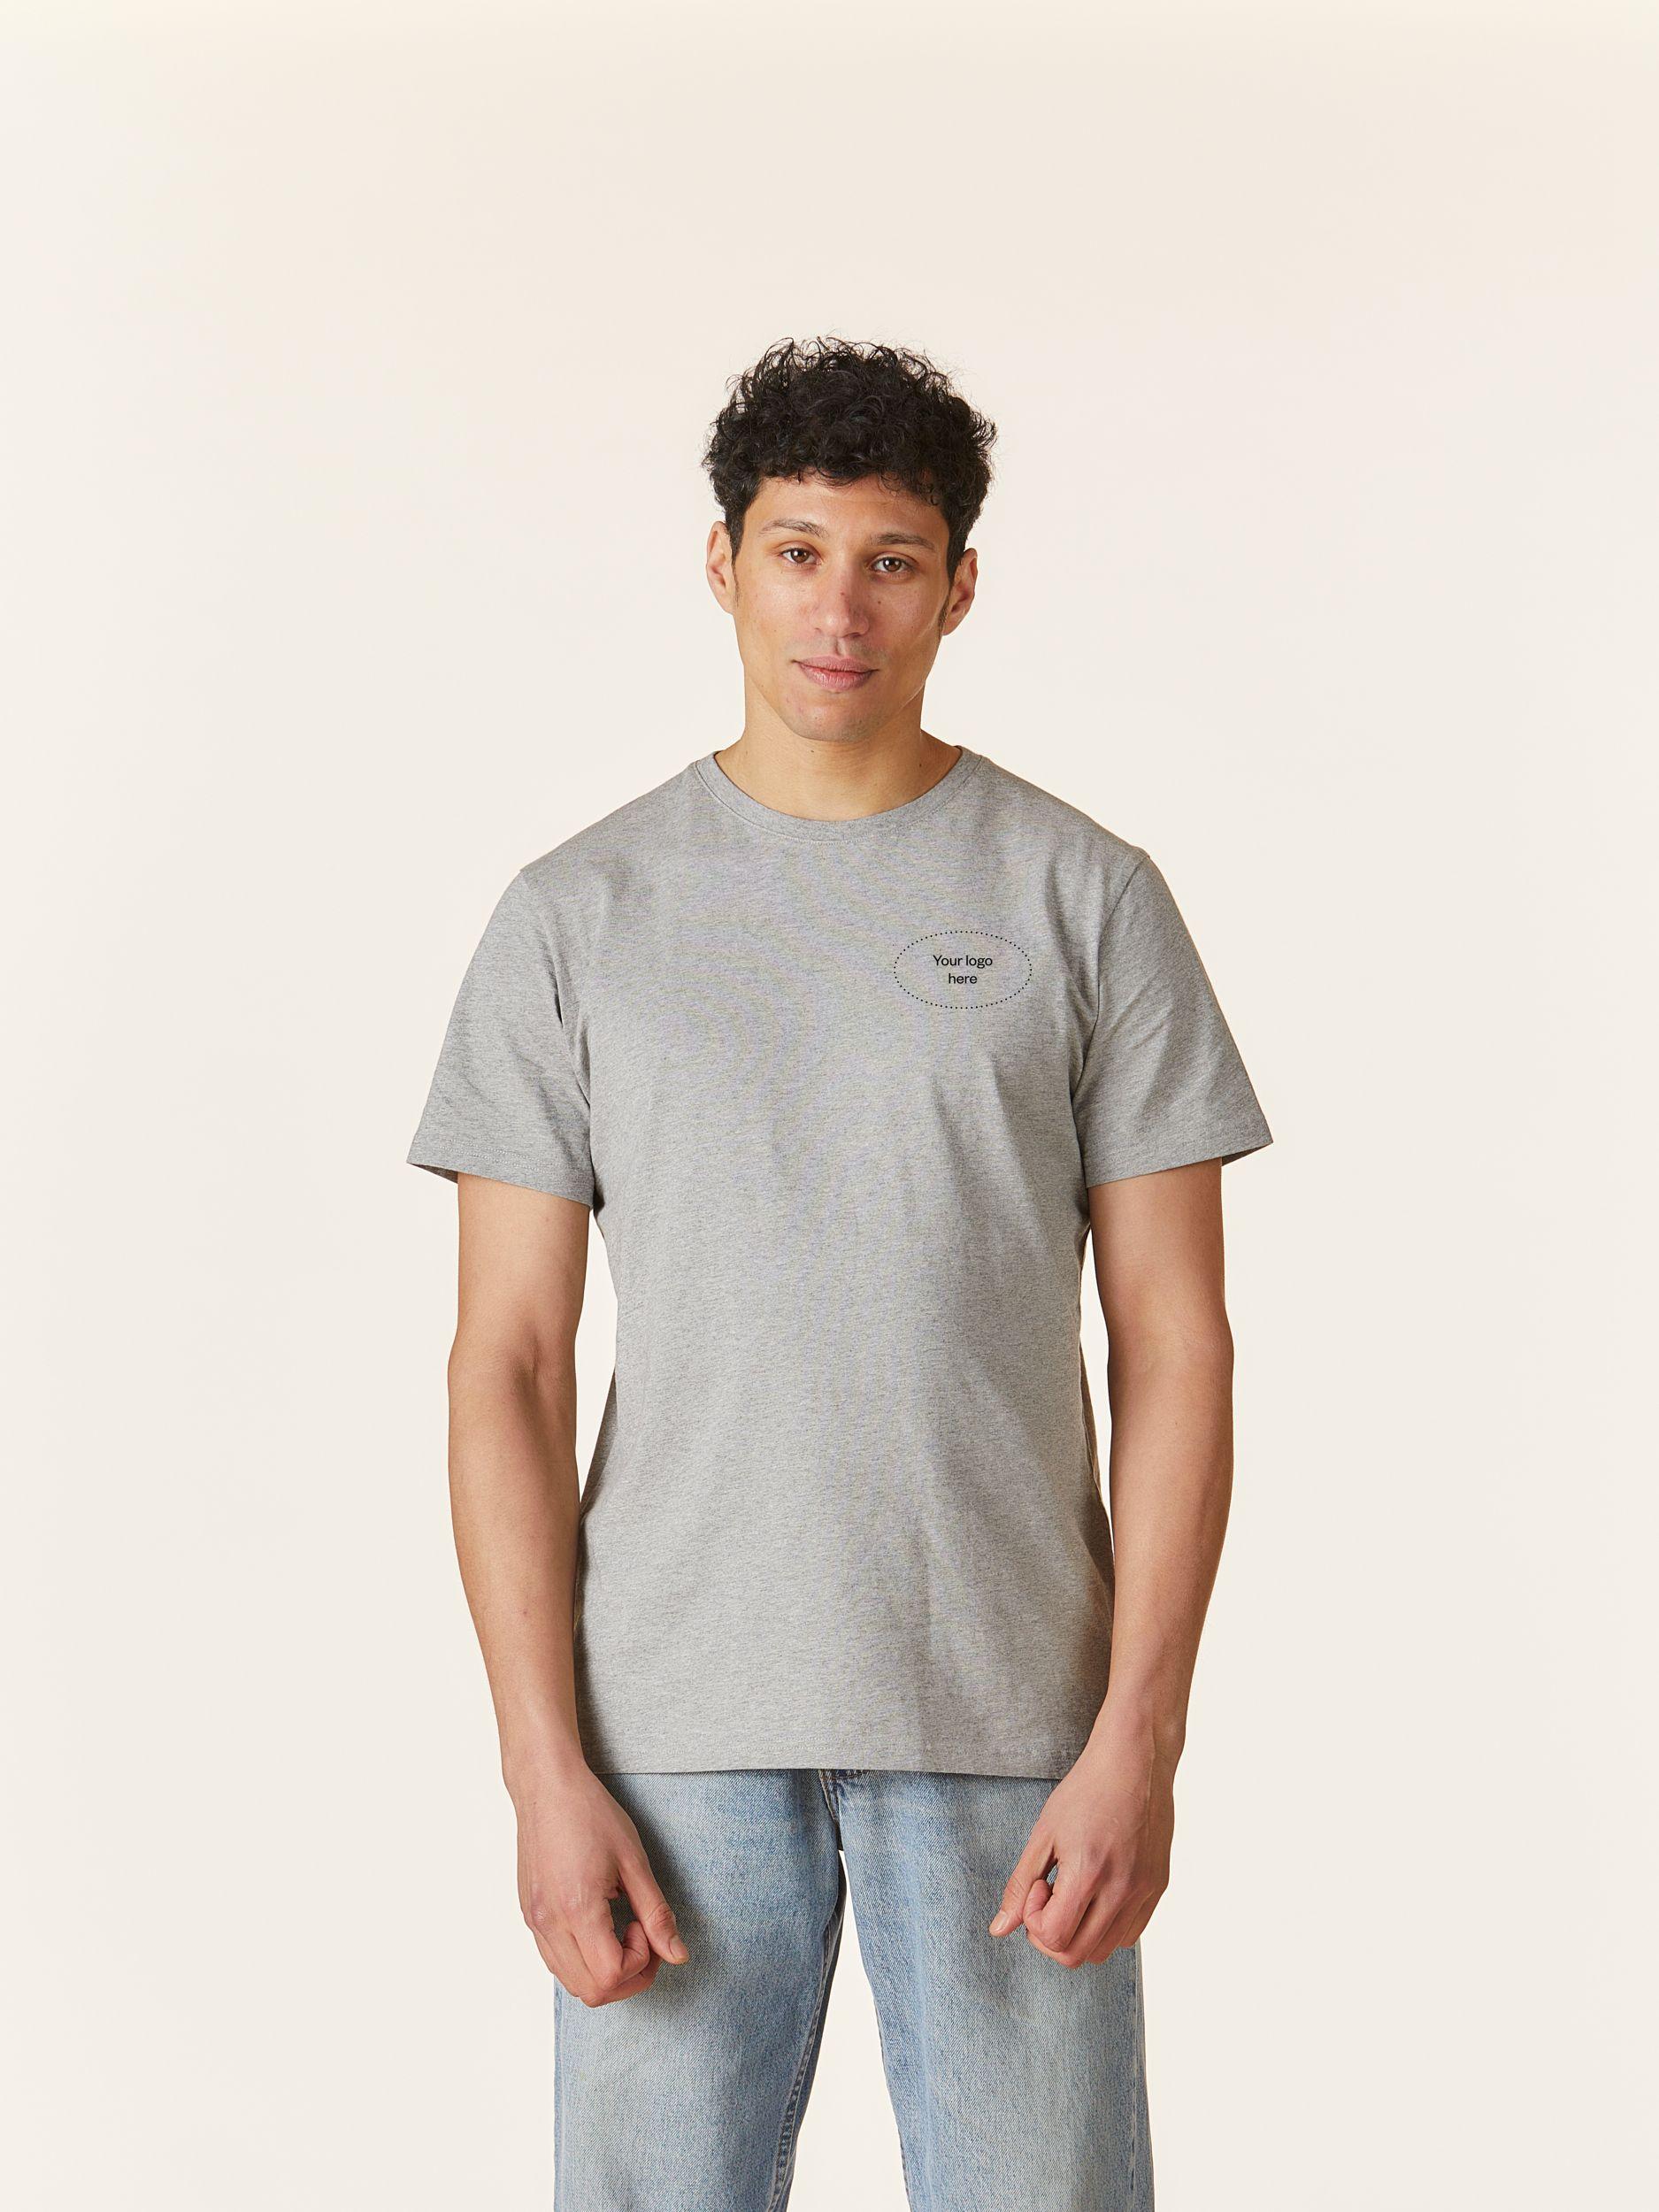 Custom Lululemon T-shirt - Sustainable Textile